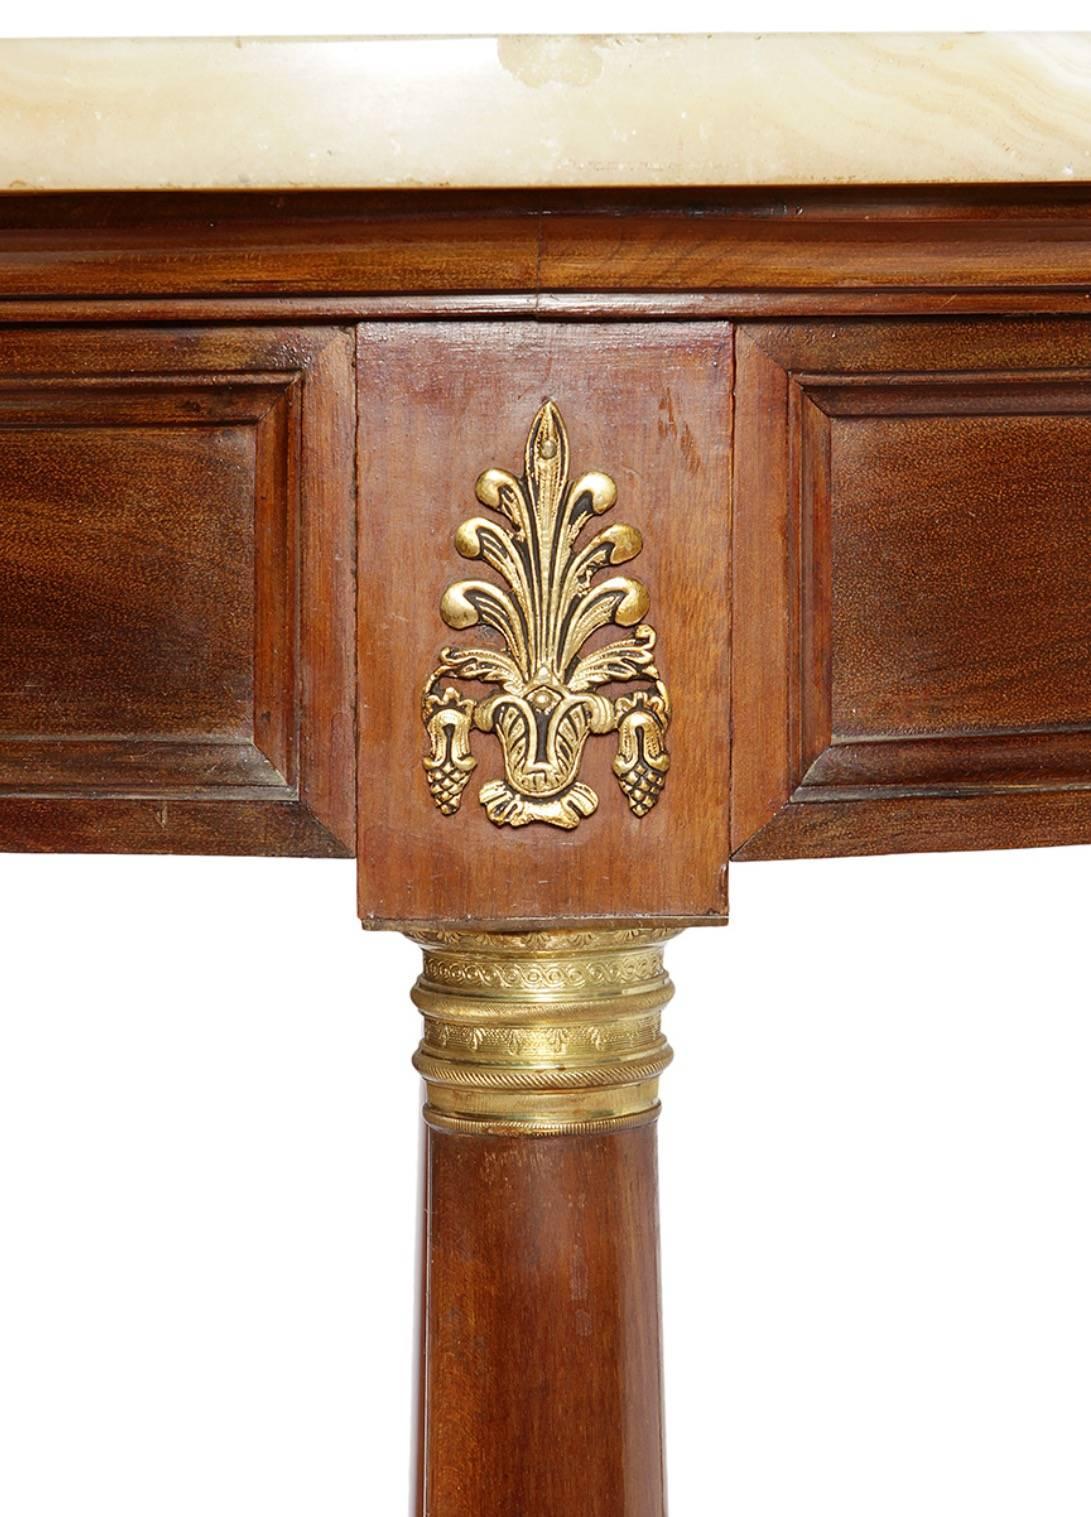 Table auxiliaire style Empire, avec structure en bois dans sa couleur, applications ornementales en bronze et bronze onyx. De plan circulaire, il se lève sur quatre jambes en forme de colonne, unis par un chambrana moulée en forme de 